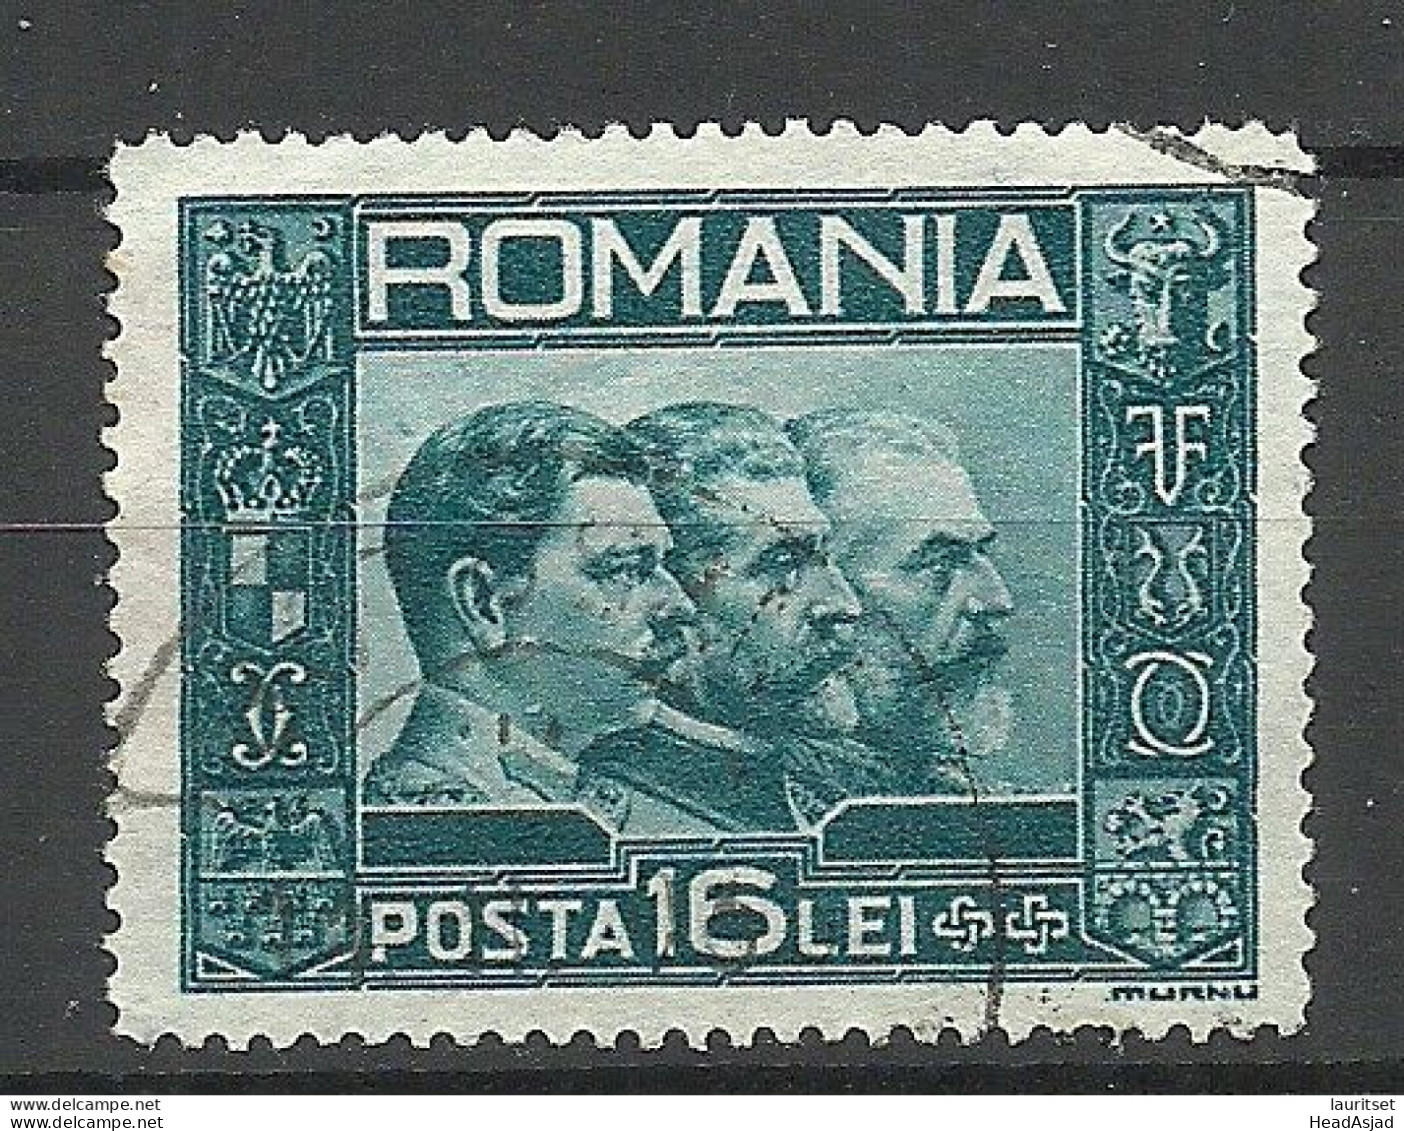 ROMANIA Rumänien 1931 Michel 418 O - Gebraucht